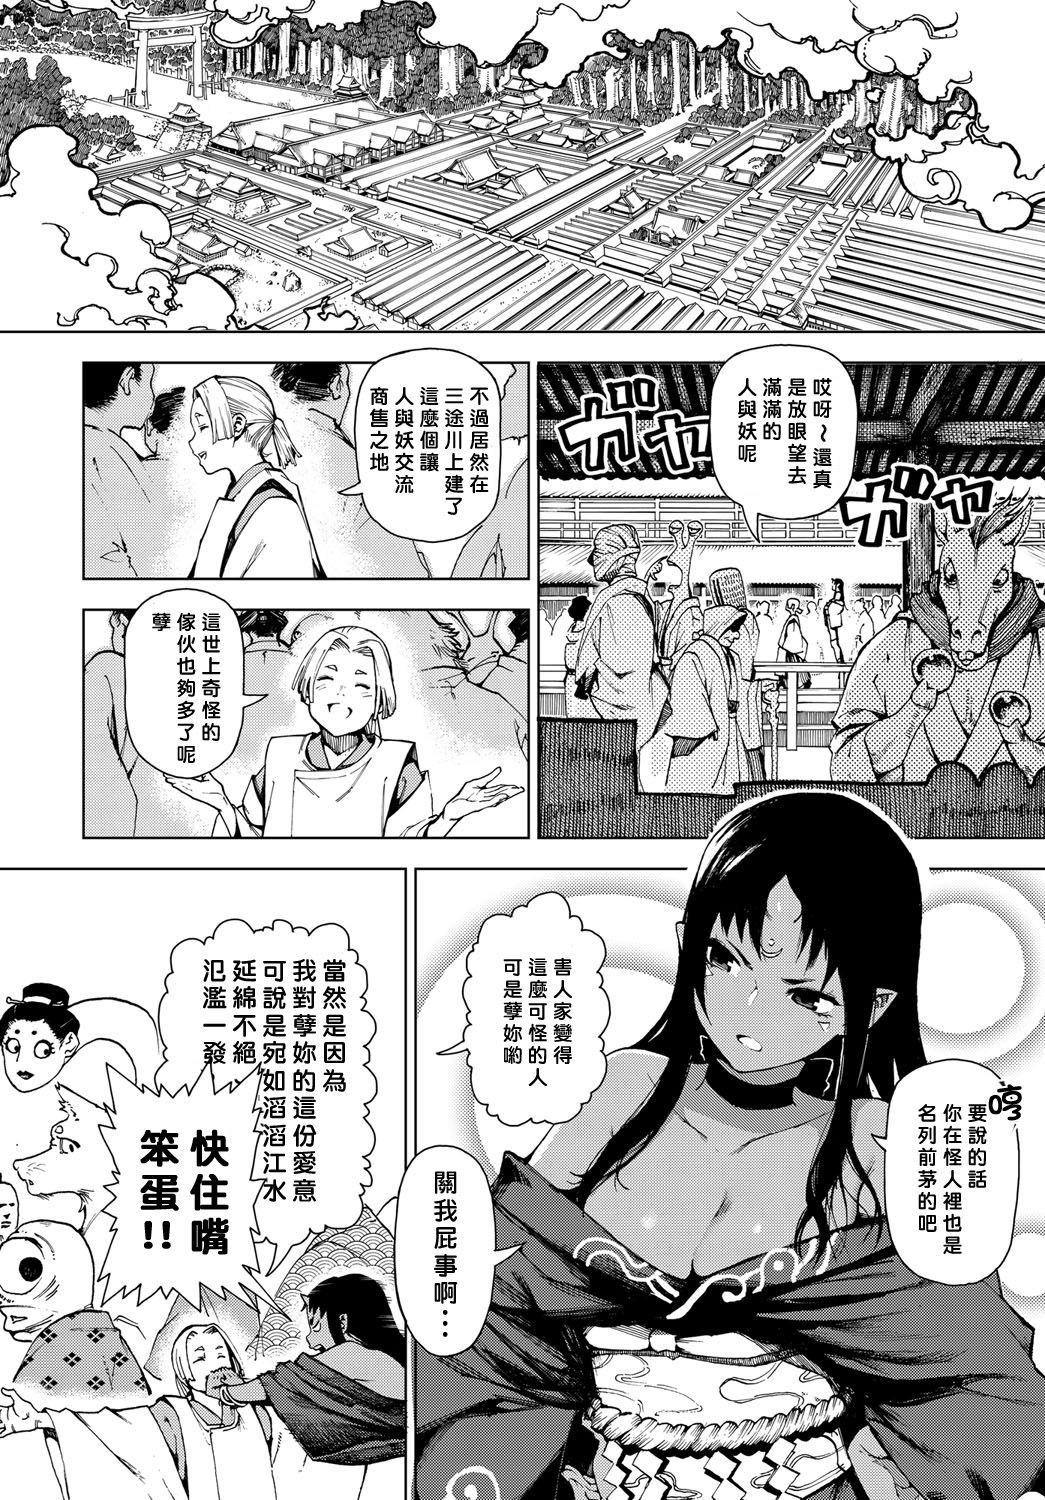 Cumload Izayoi no Tsuki | Waning Moon Milfporn - Page 2